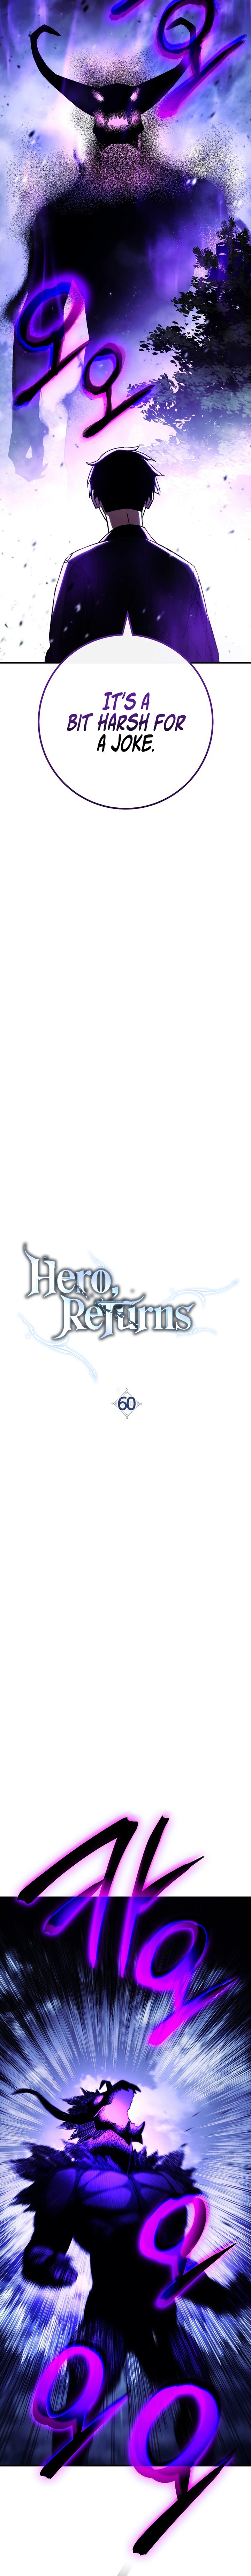 The Hero Returns 60 2